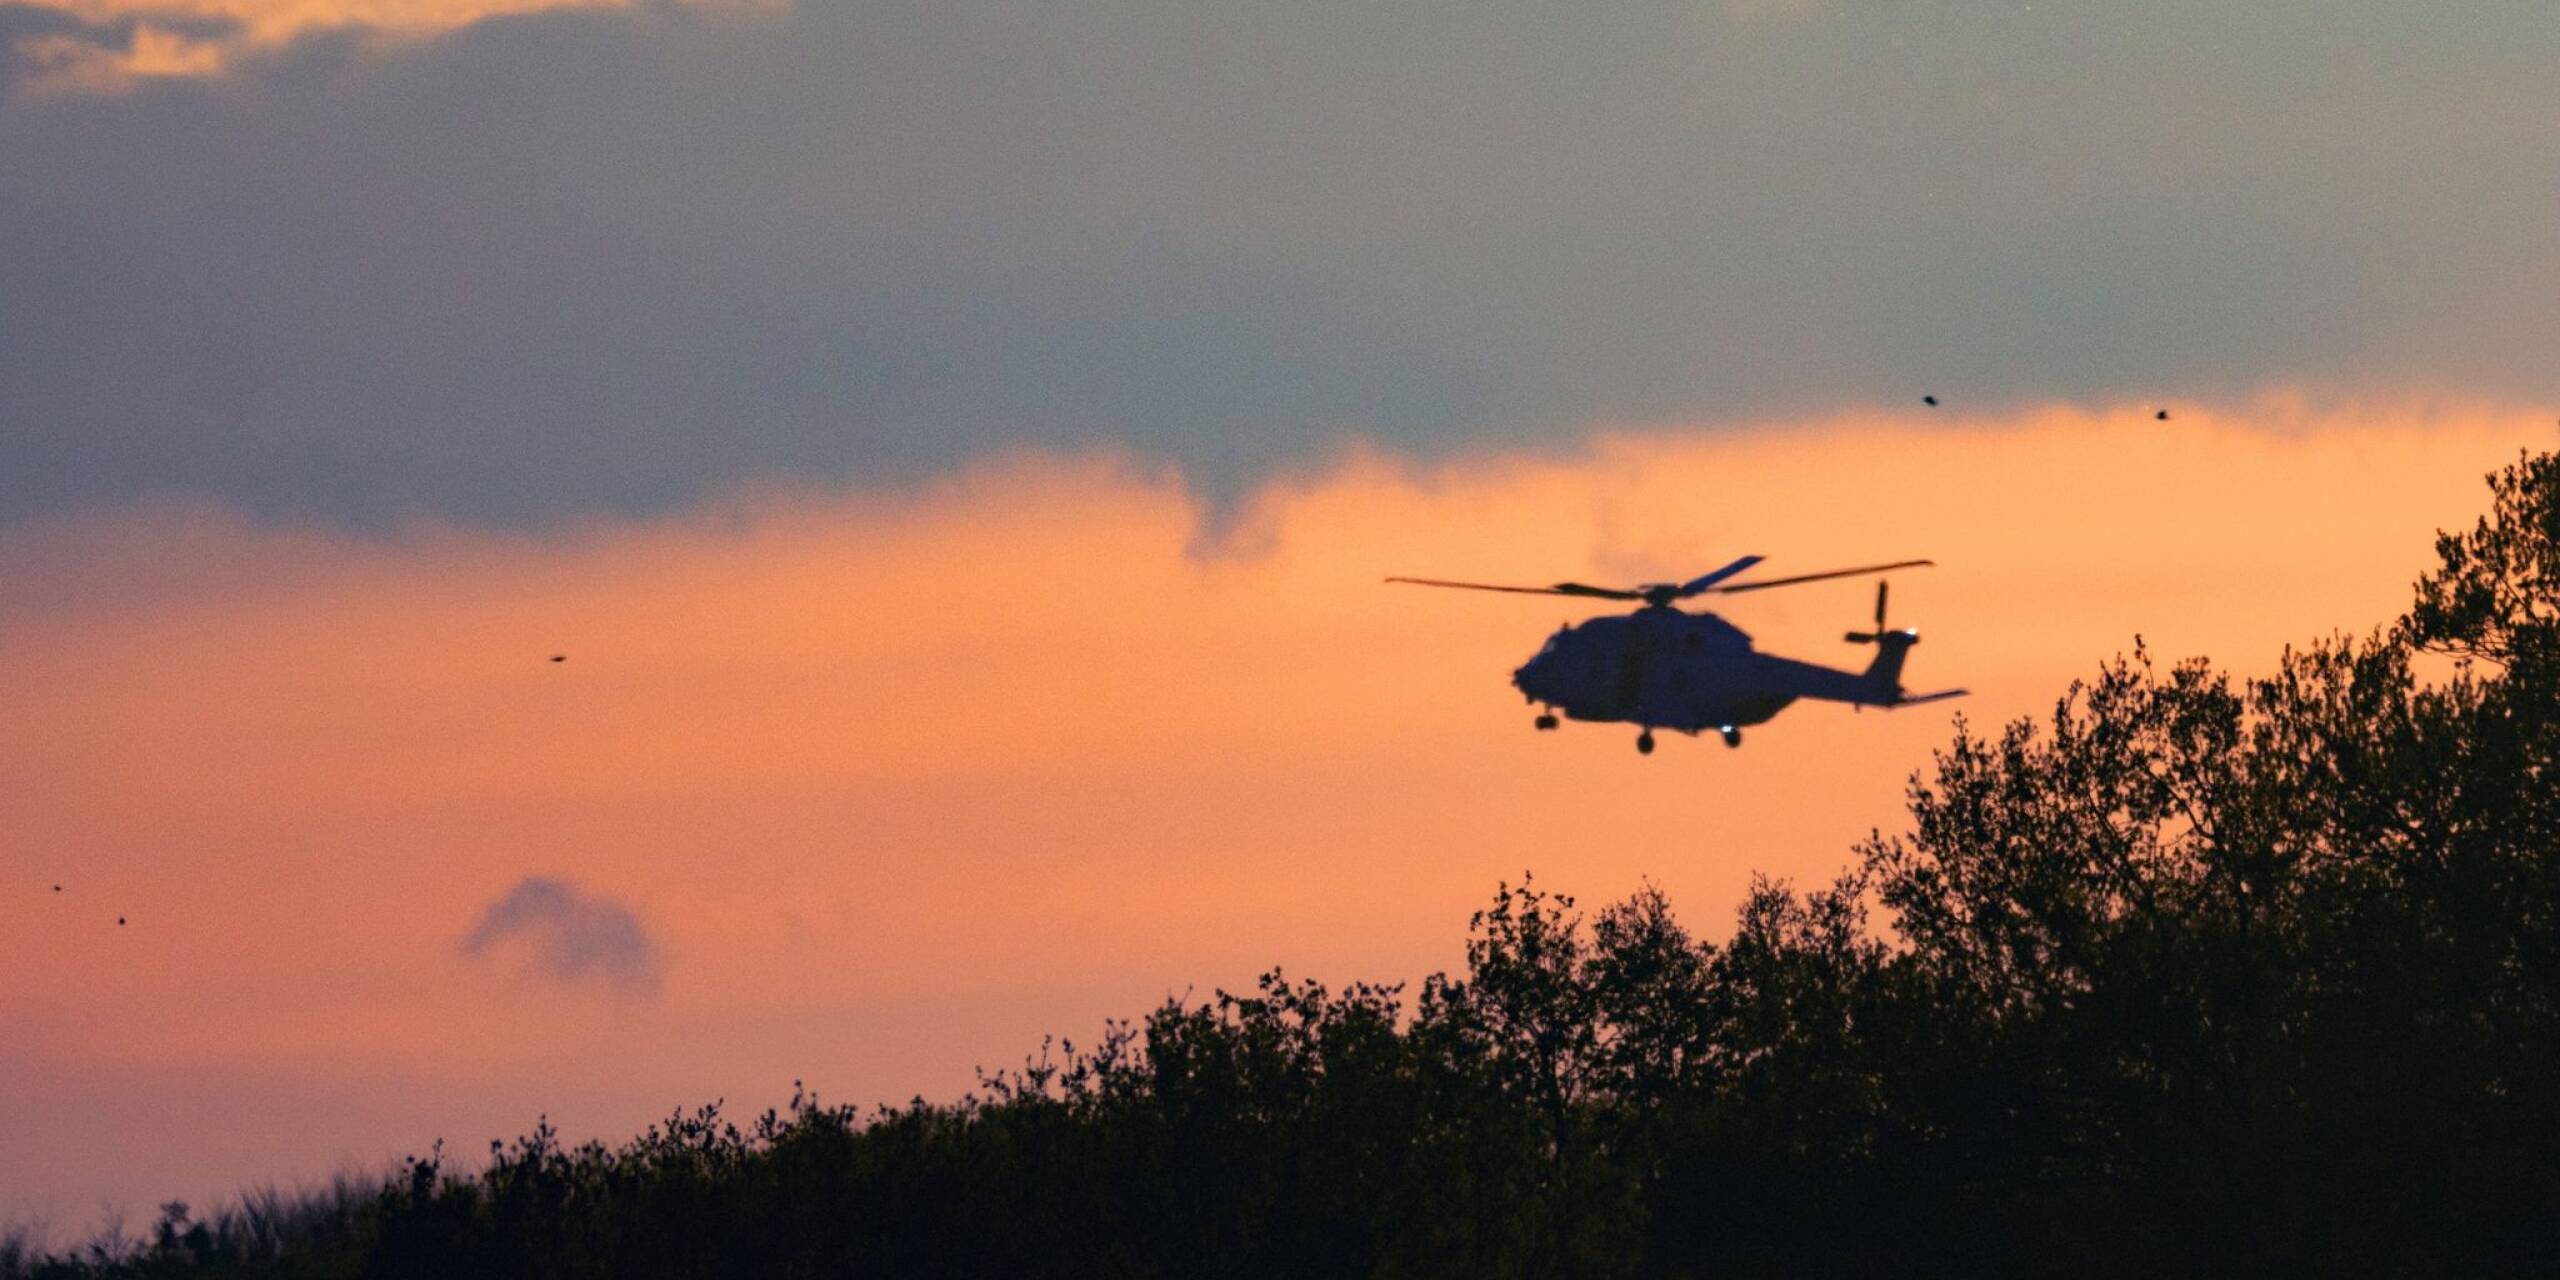 Seit Montagabend wird der sechsjährige Arian vermisst. In Bremervörde im nördlichen Niedersachsen setzt die Bundeswehr auch Hubschrauber ein. Rund 200 Soldaten mit Nachtsichtgeräten sollen in der Nacht nach dem Jungen suchen.